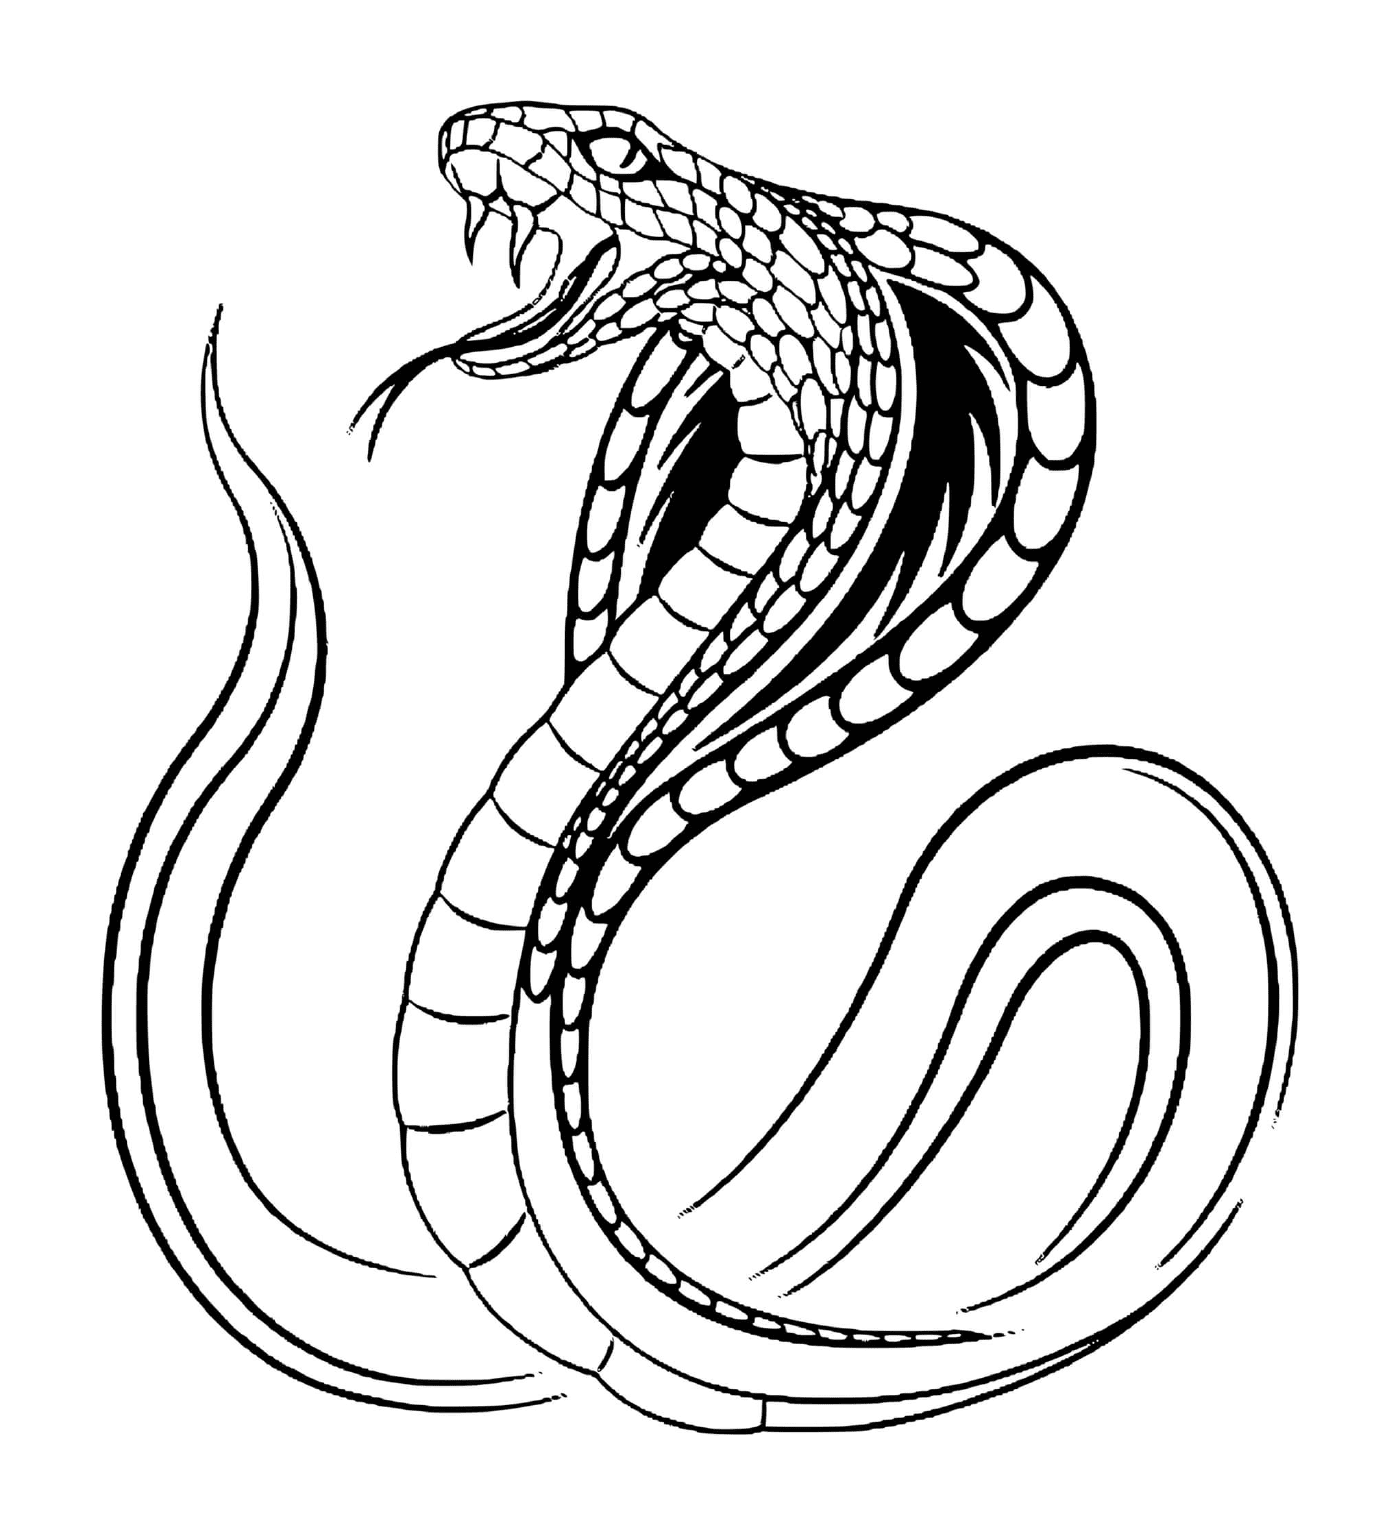  Serpiente de cobra 